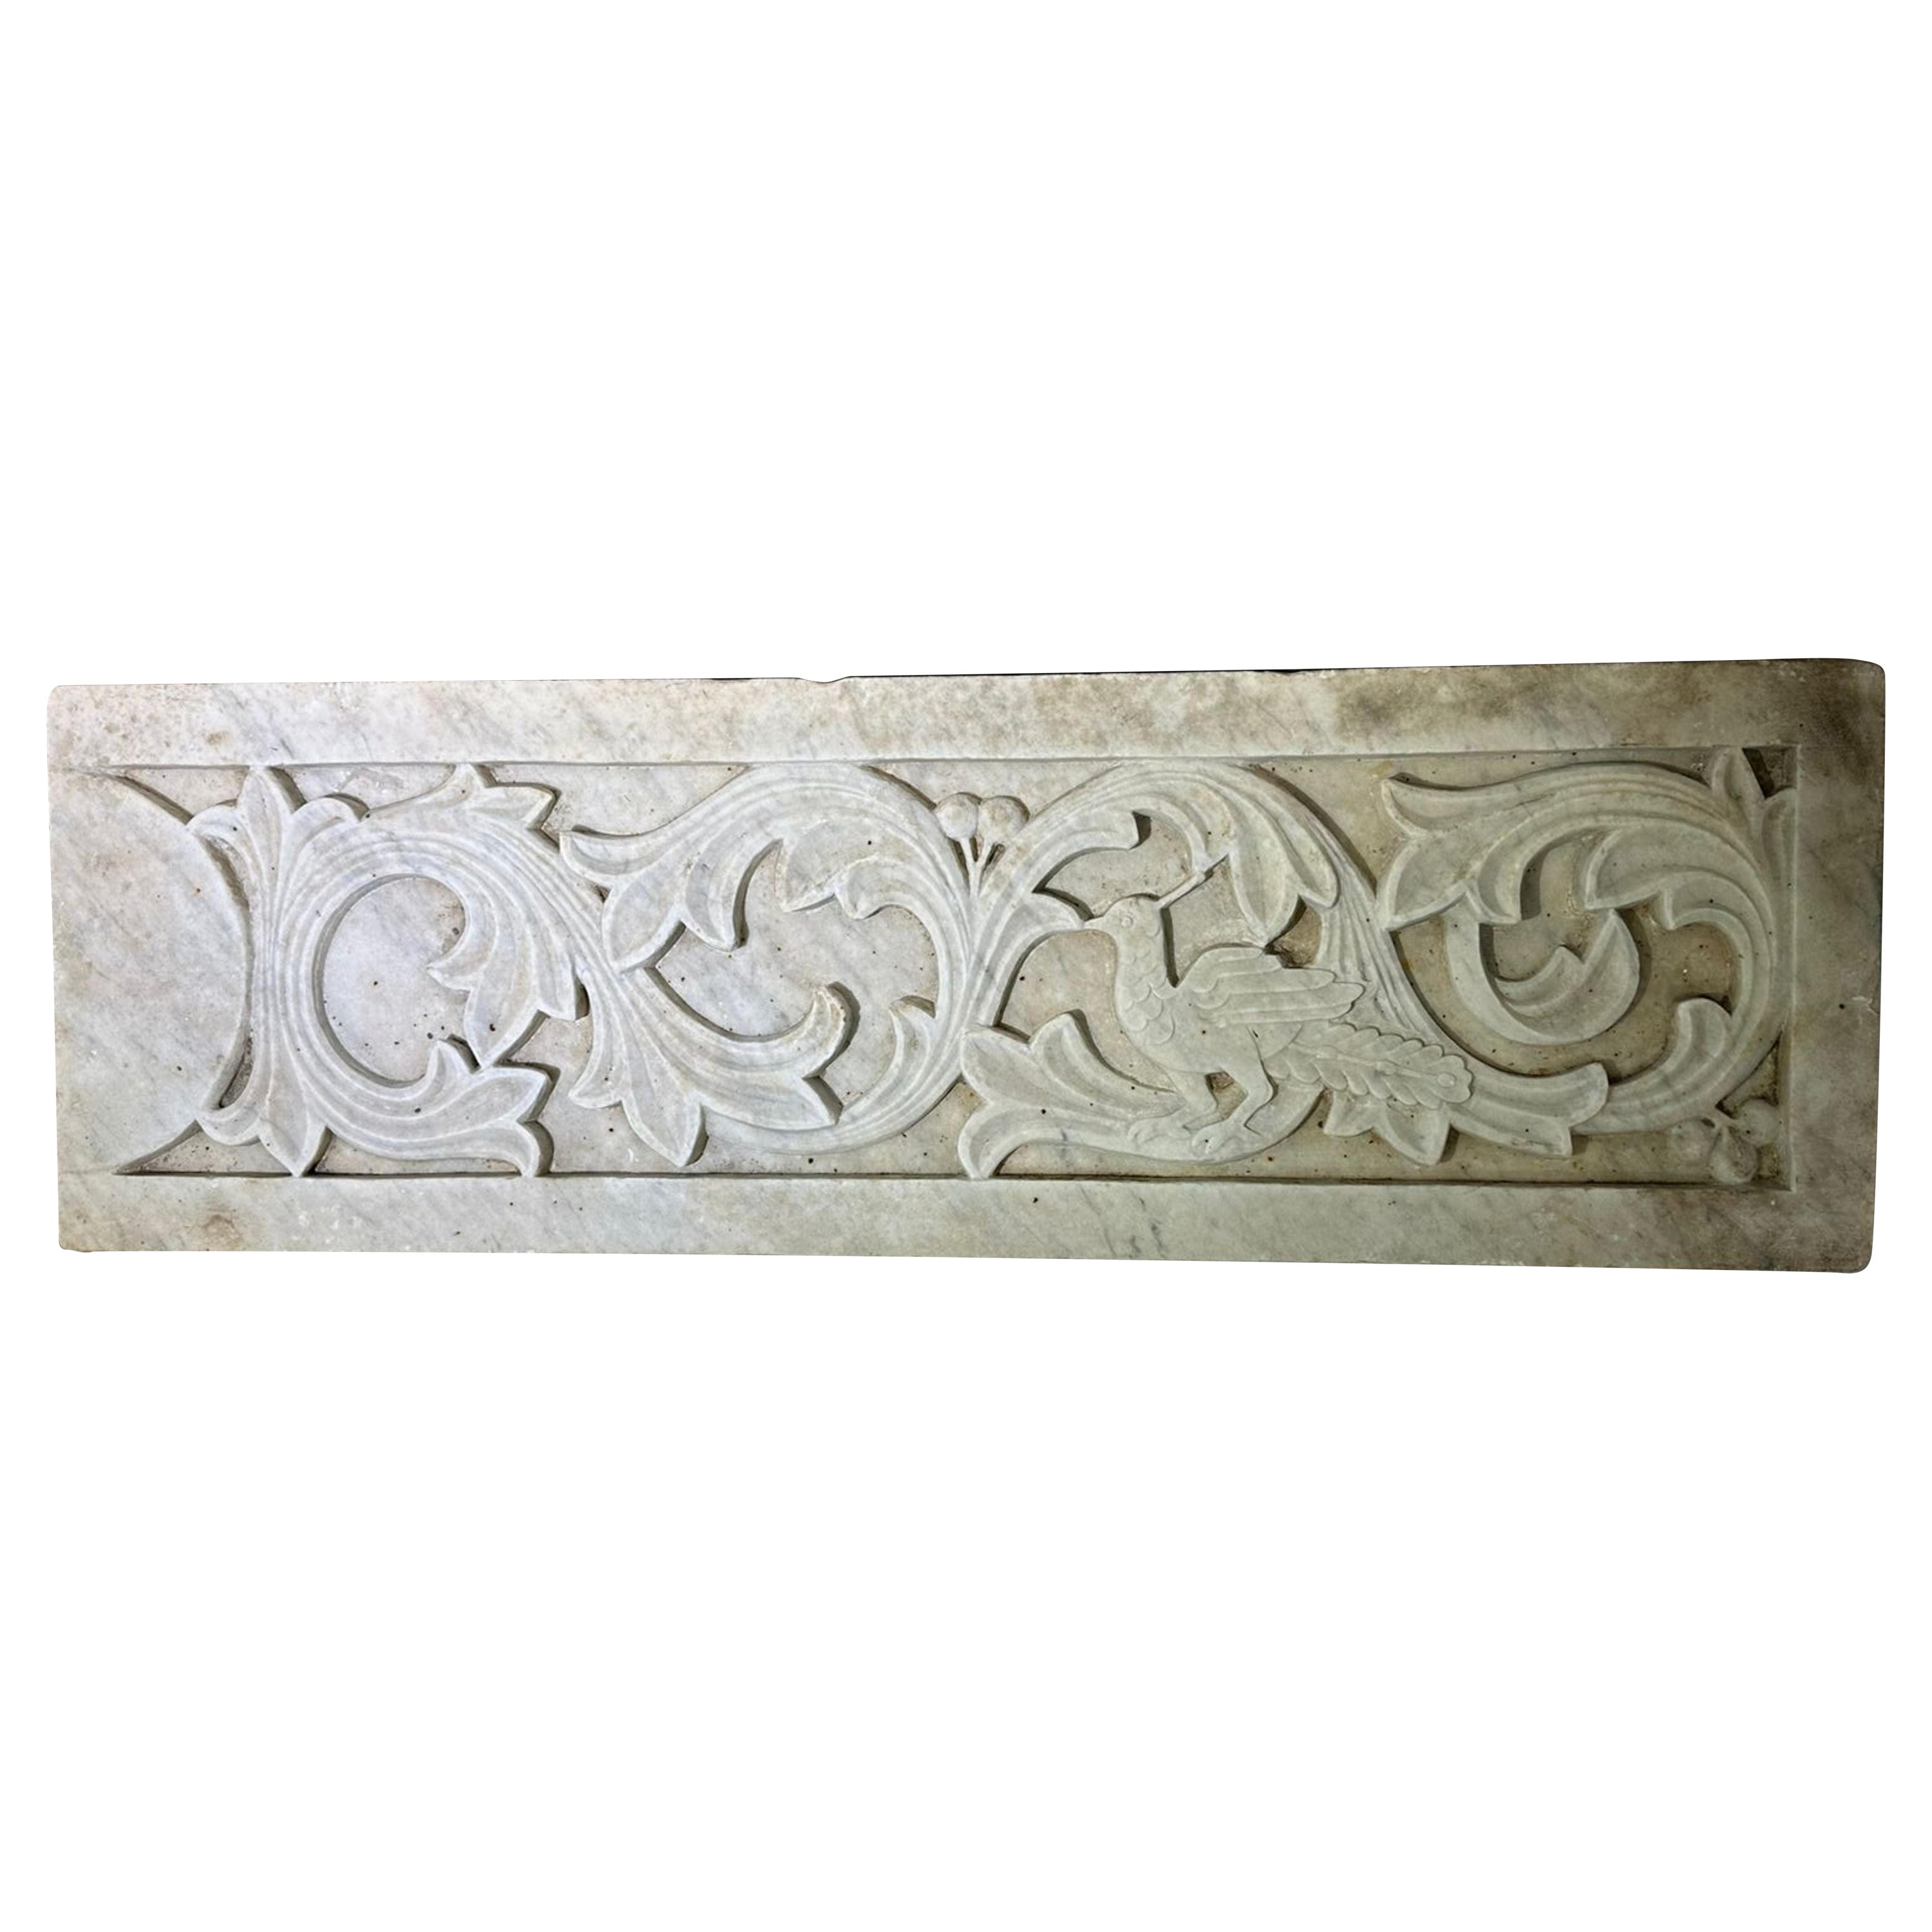 Relief italien en marbre de Carrare fin du 19ème siècle
Etat original
90cm x 29.5cm x 5cm
Avec crochet pour accrocher au mur